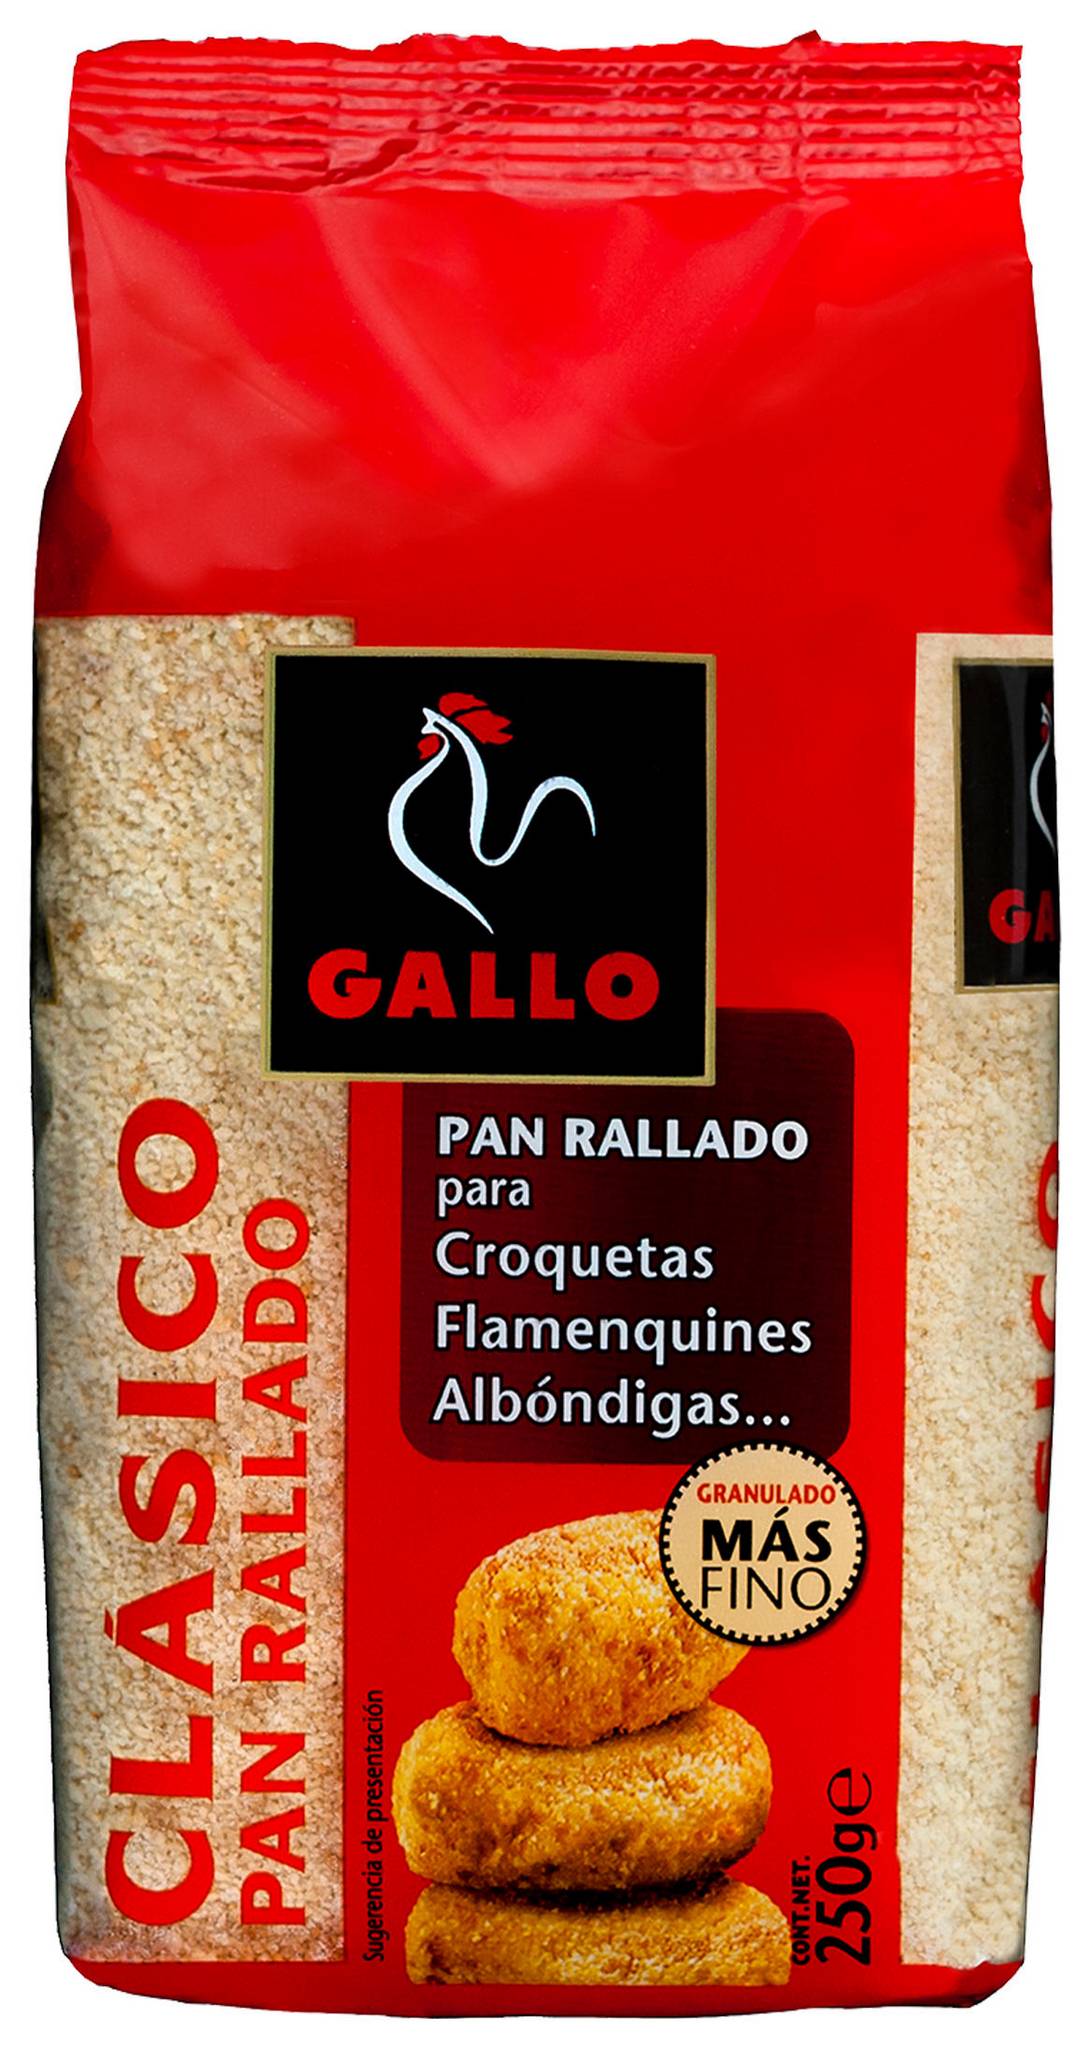 PAN GALLO RALLADO 250G